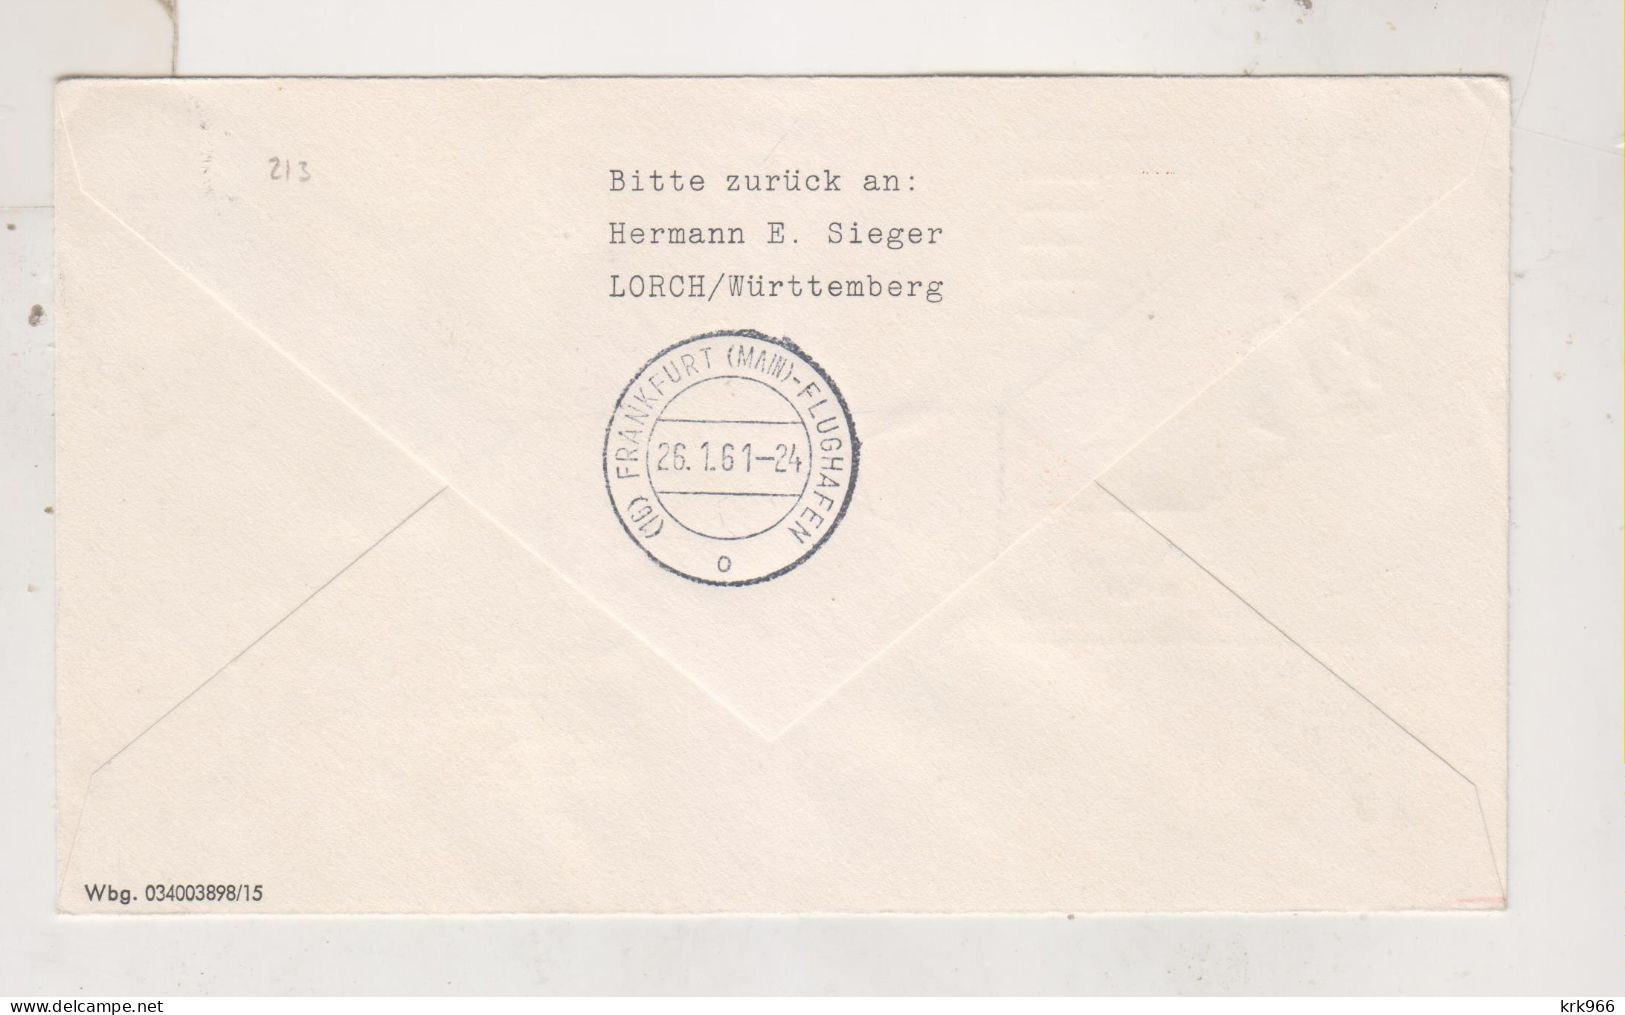 HONG KONG 1961 Nice Airmail Cover To Germany First Flight HONG KONG-CAIRO-FRANKFURT - Briefe U. Dokumente